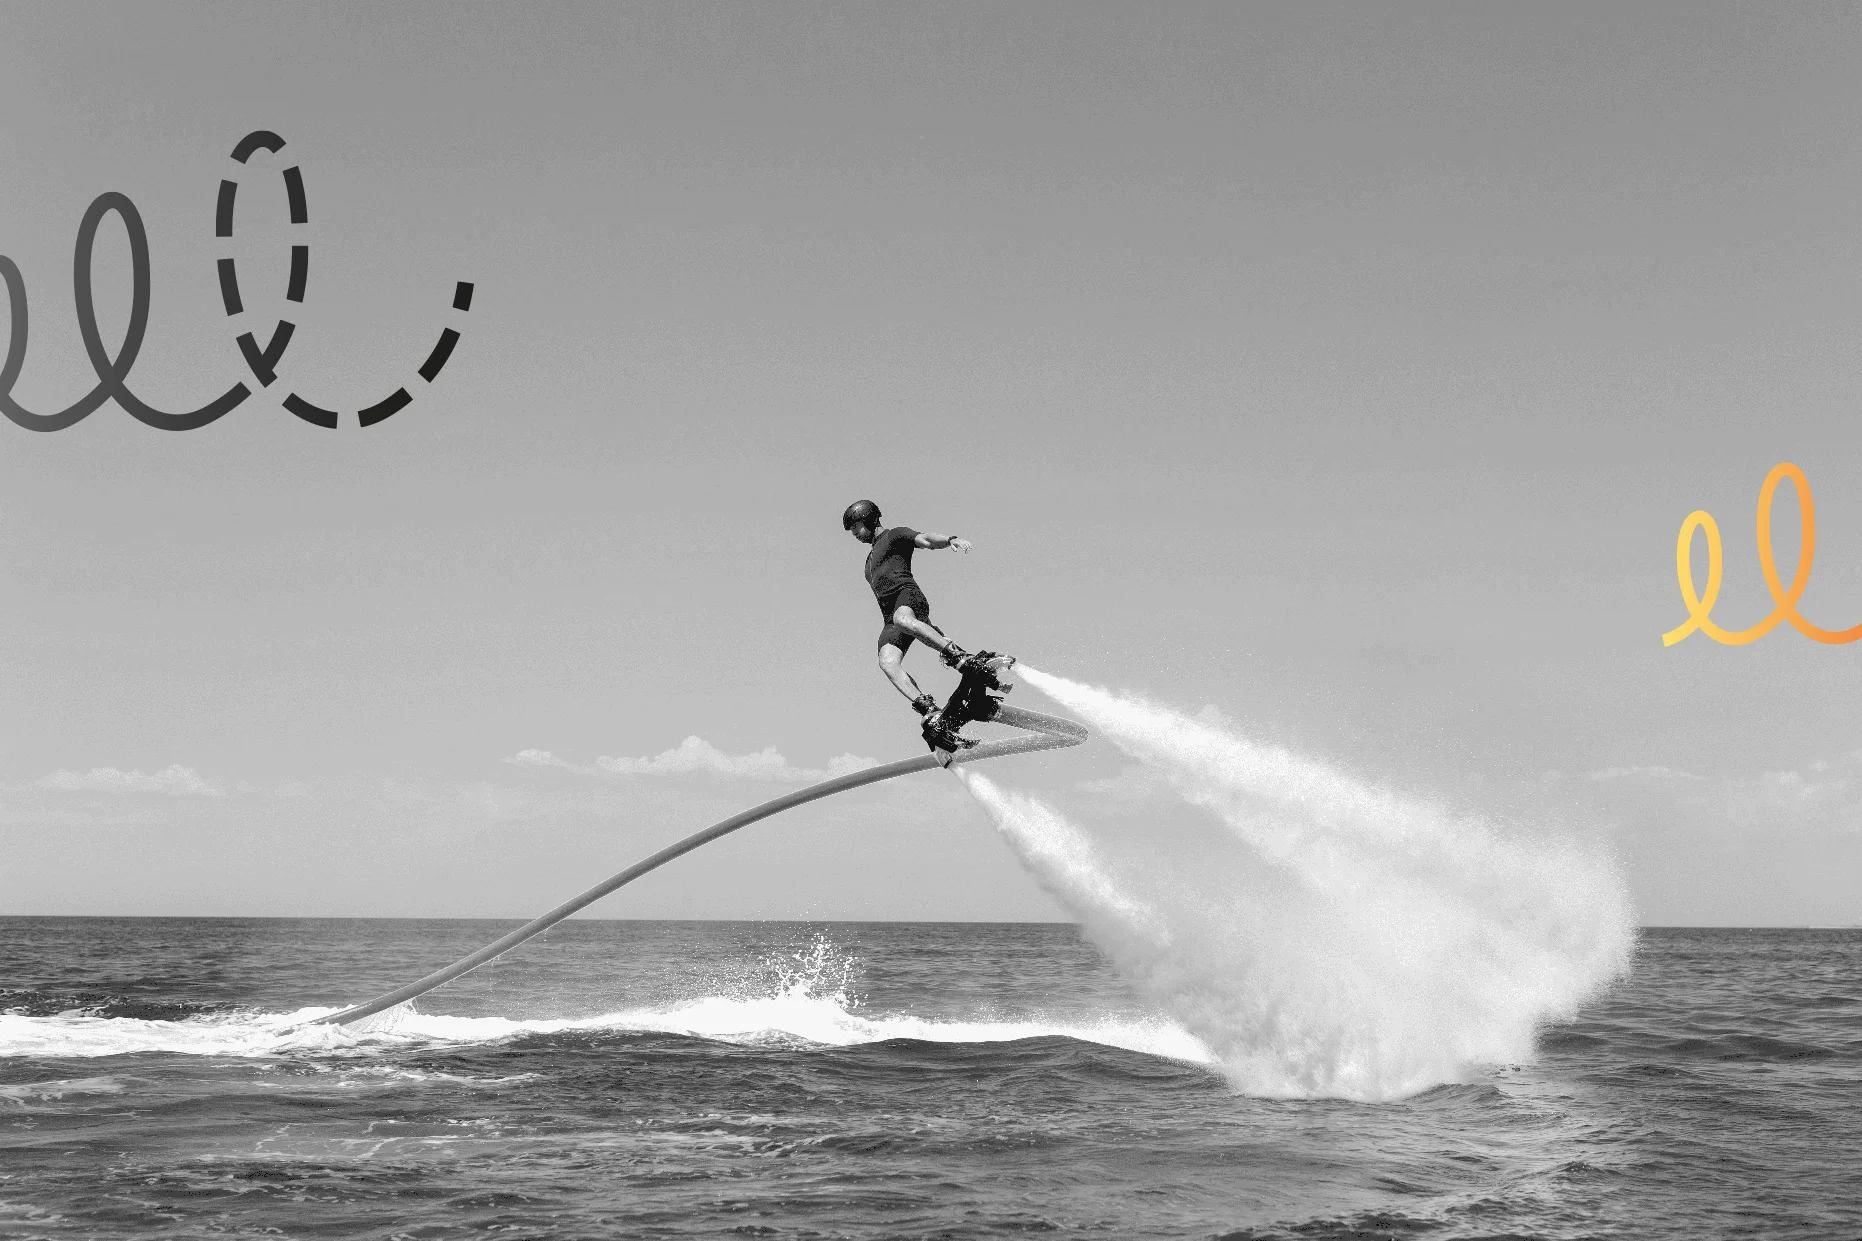 Sports nautiques extrêmes. Le gars vole au flyboard aquatique. Beaucoup de pression d'eau avec motif graphique